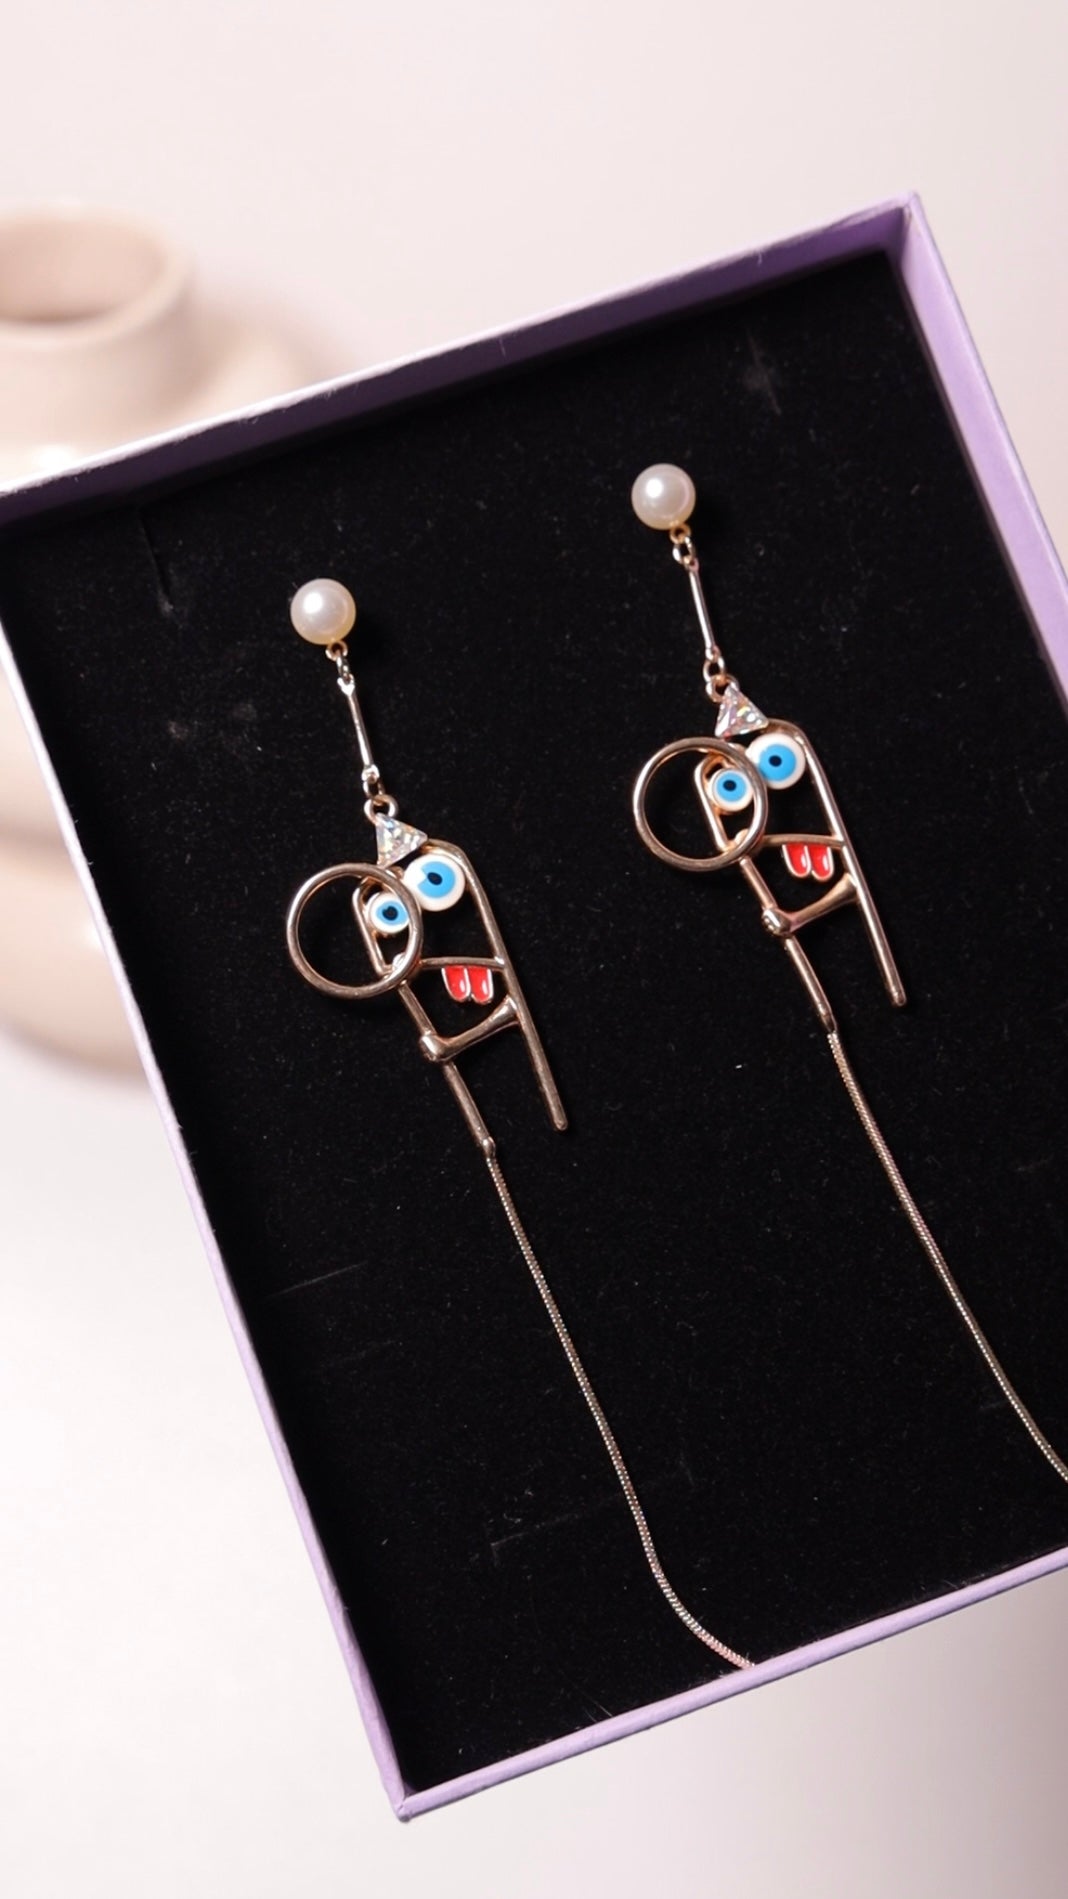 Minion earrings